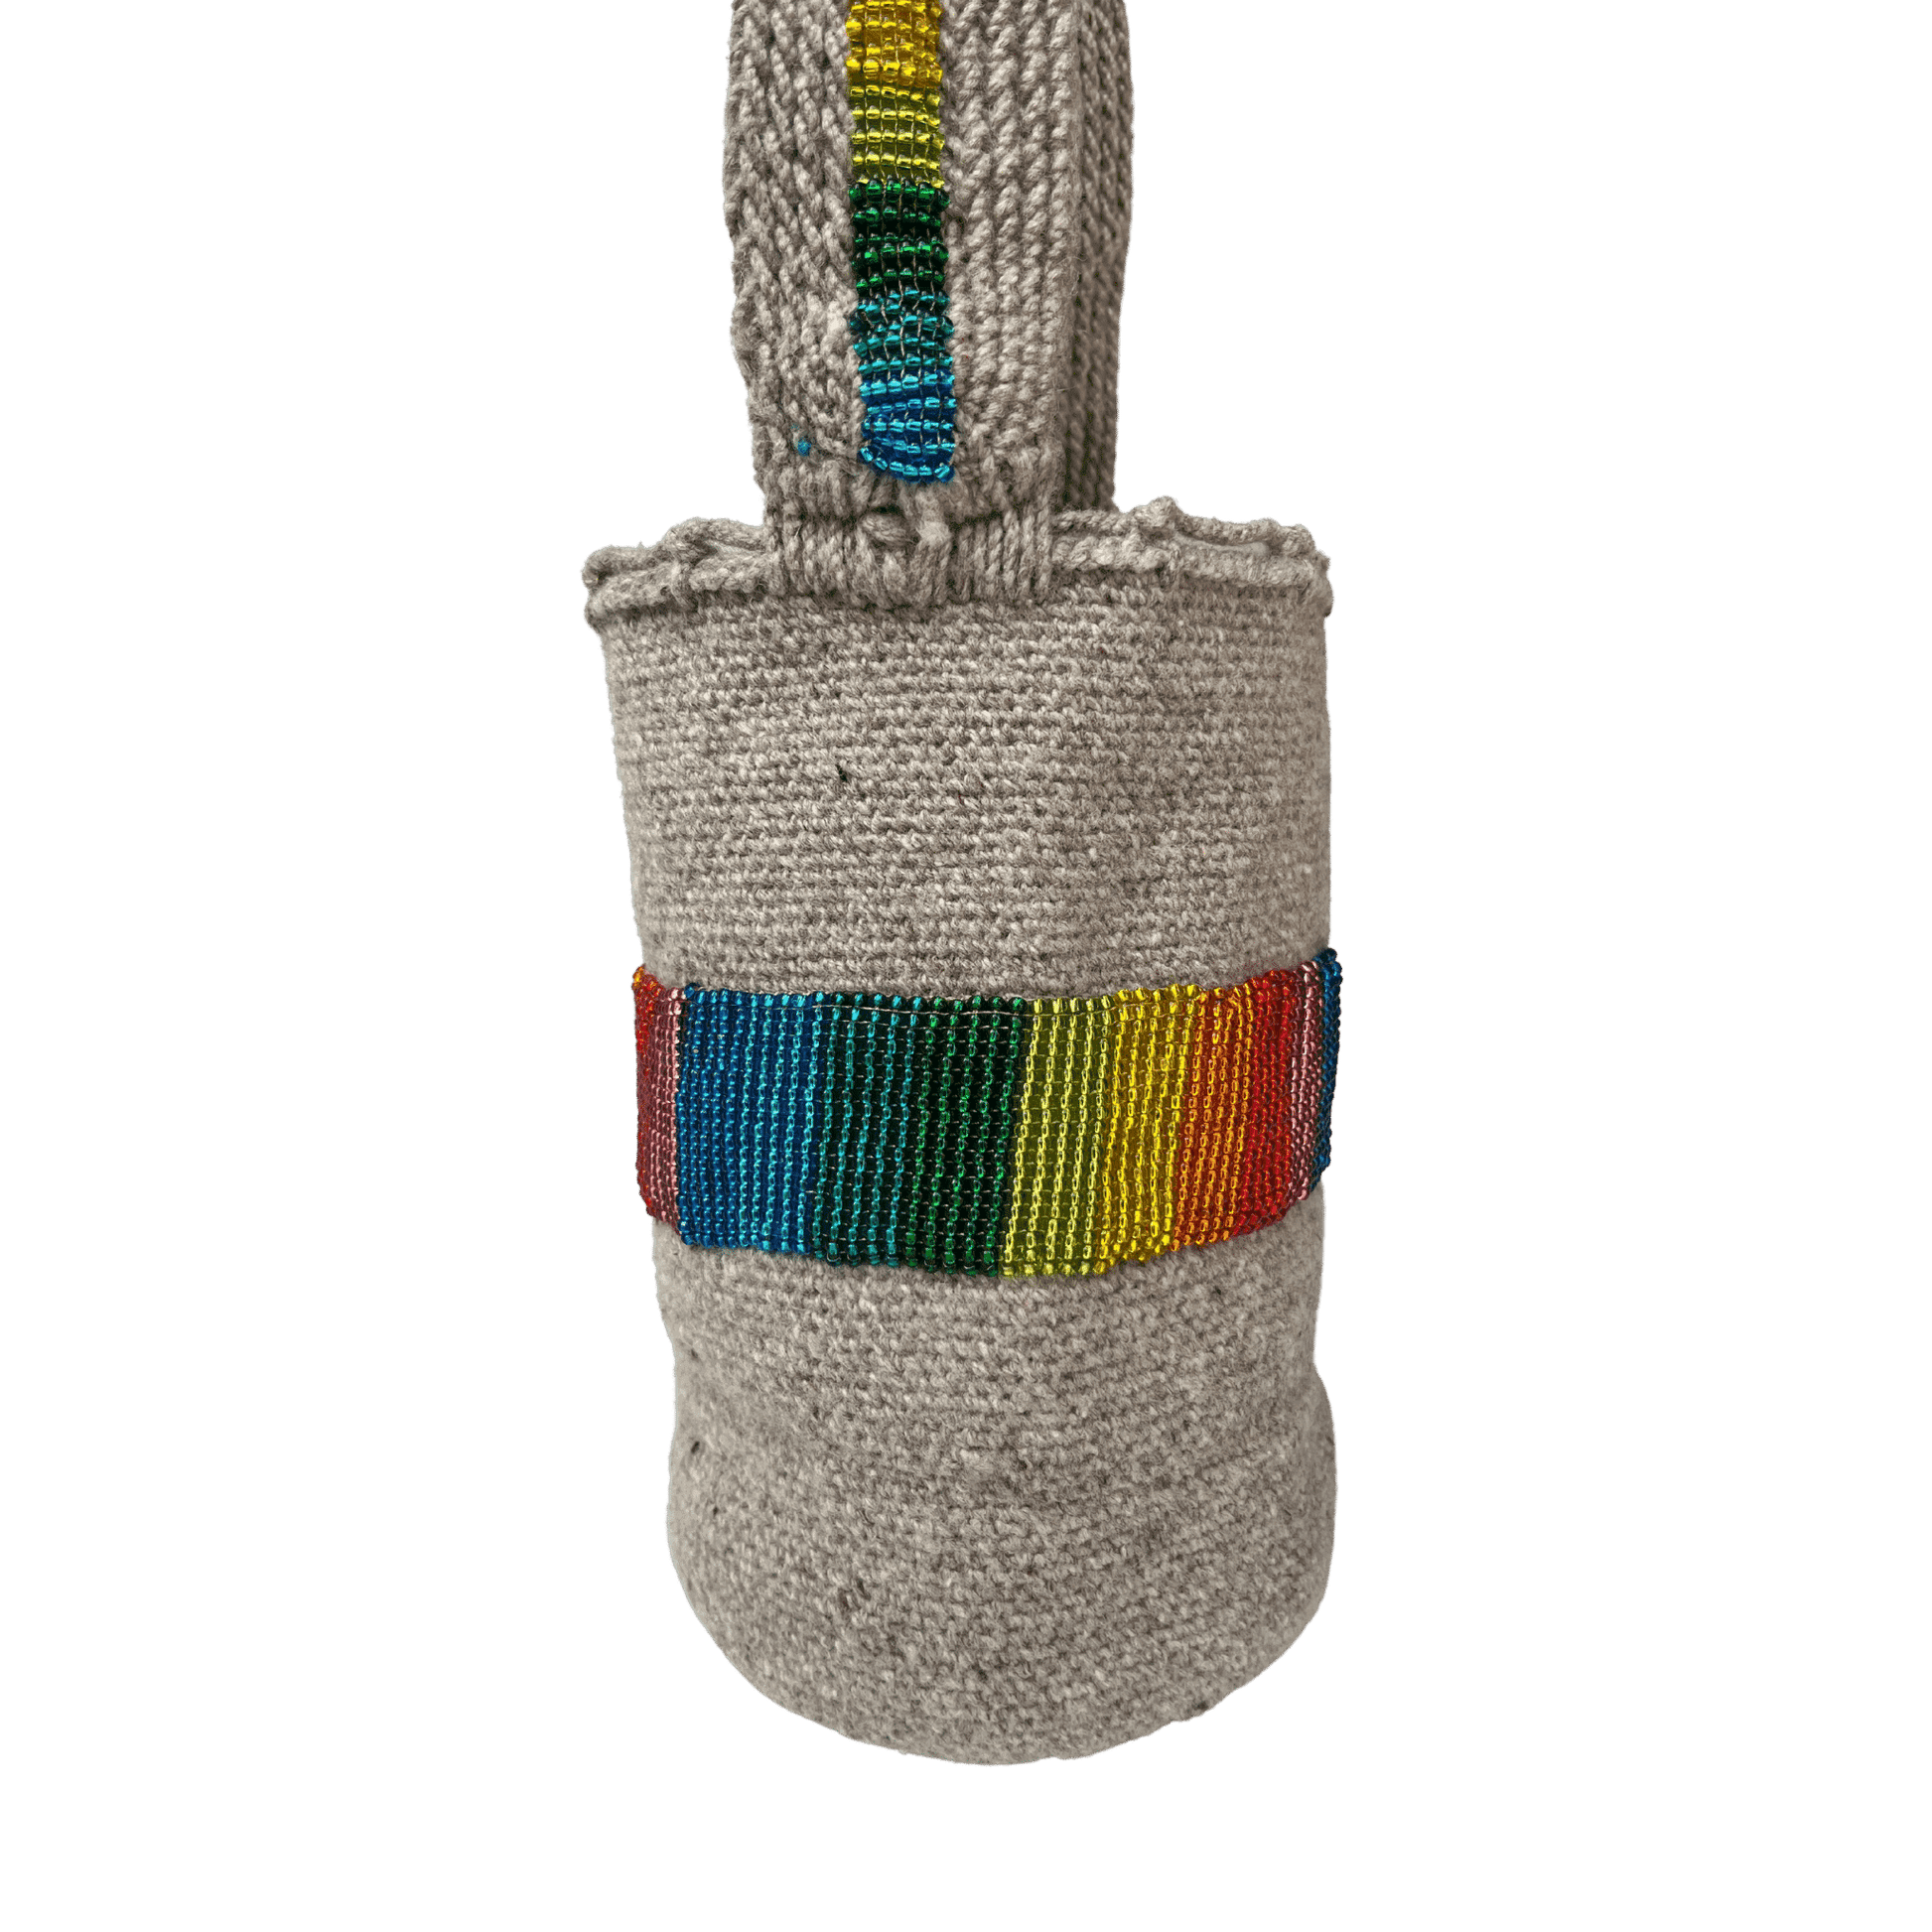 Mochila arhuaca decorada a mano con mostacillas de colores del arcoiris